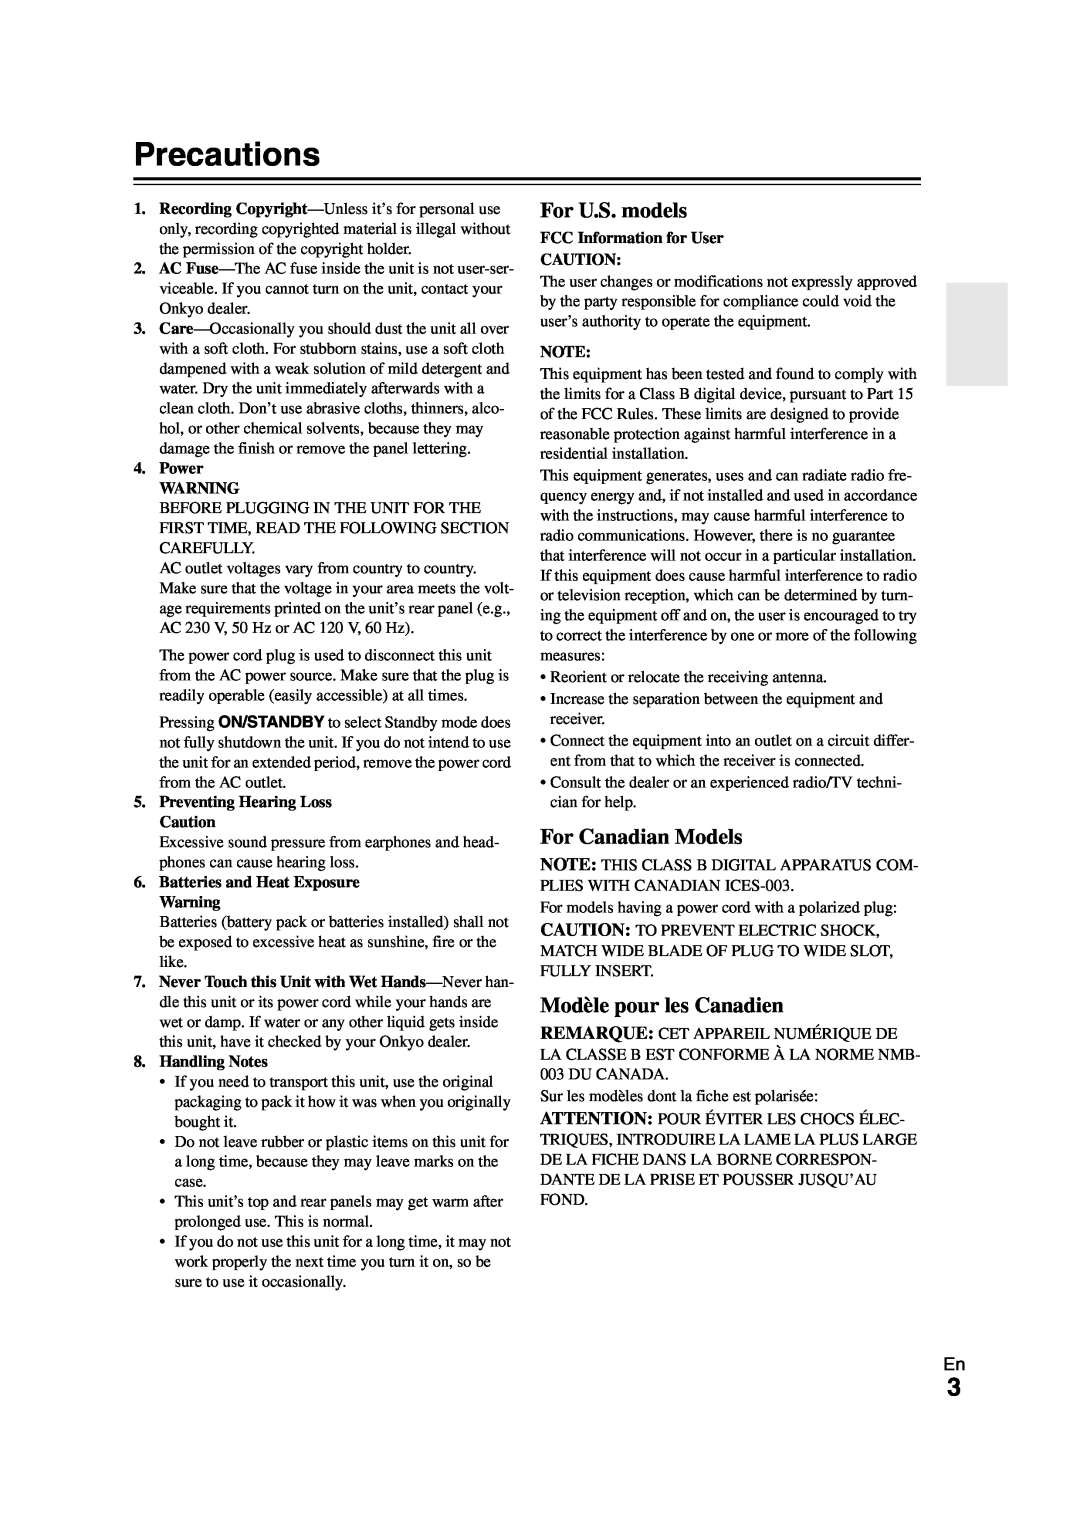 Onkyo TX-NR808 instruction manual Precautions, For U.S. models, For Canadian Models, Modèle pour les Canadien 